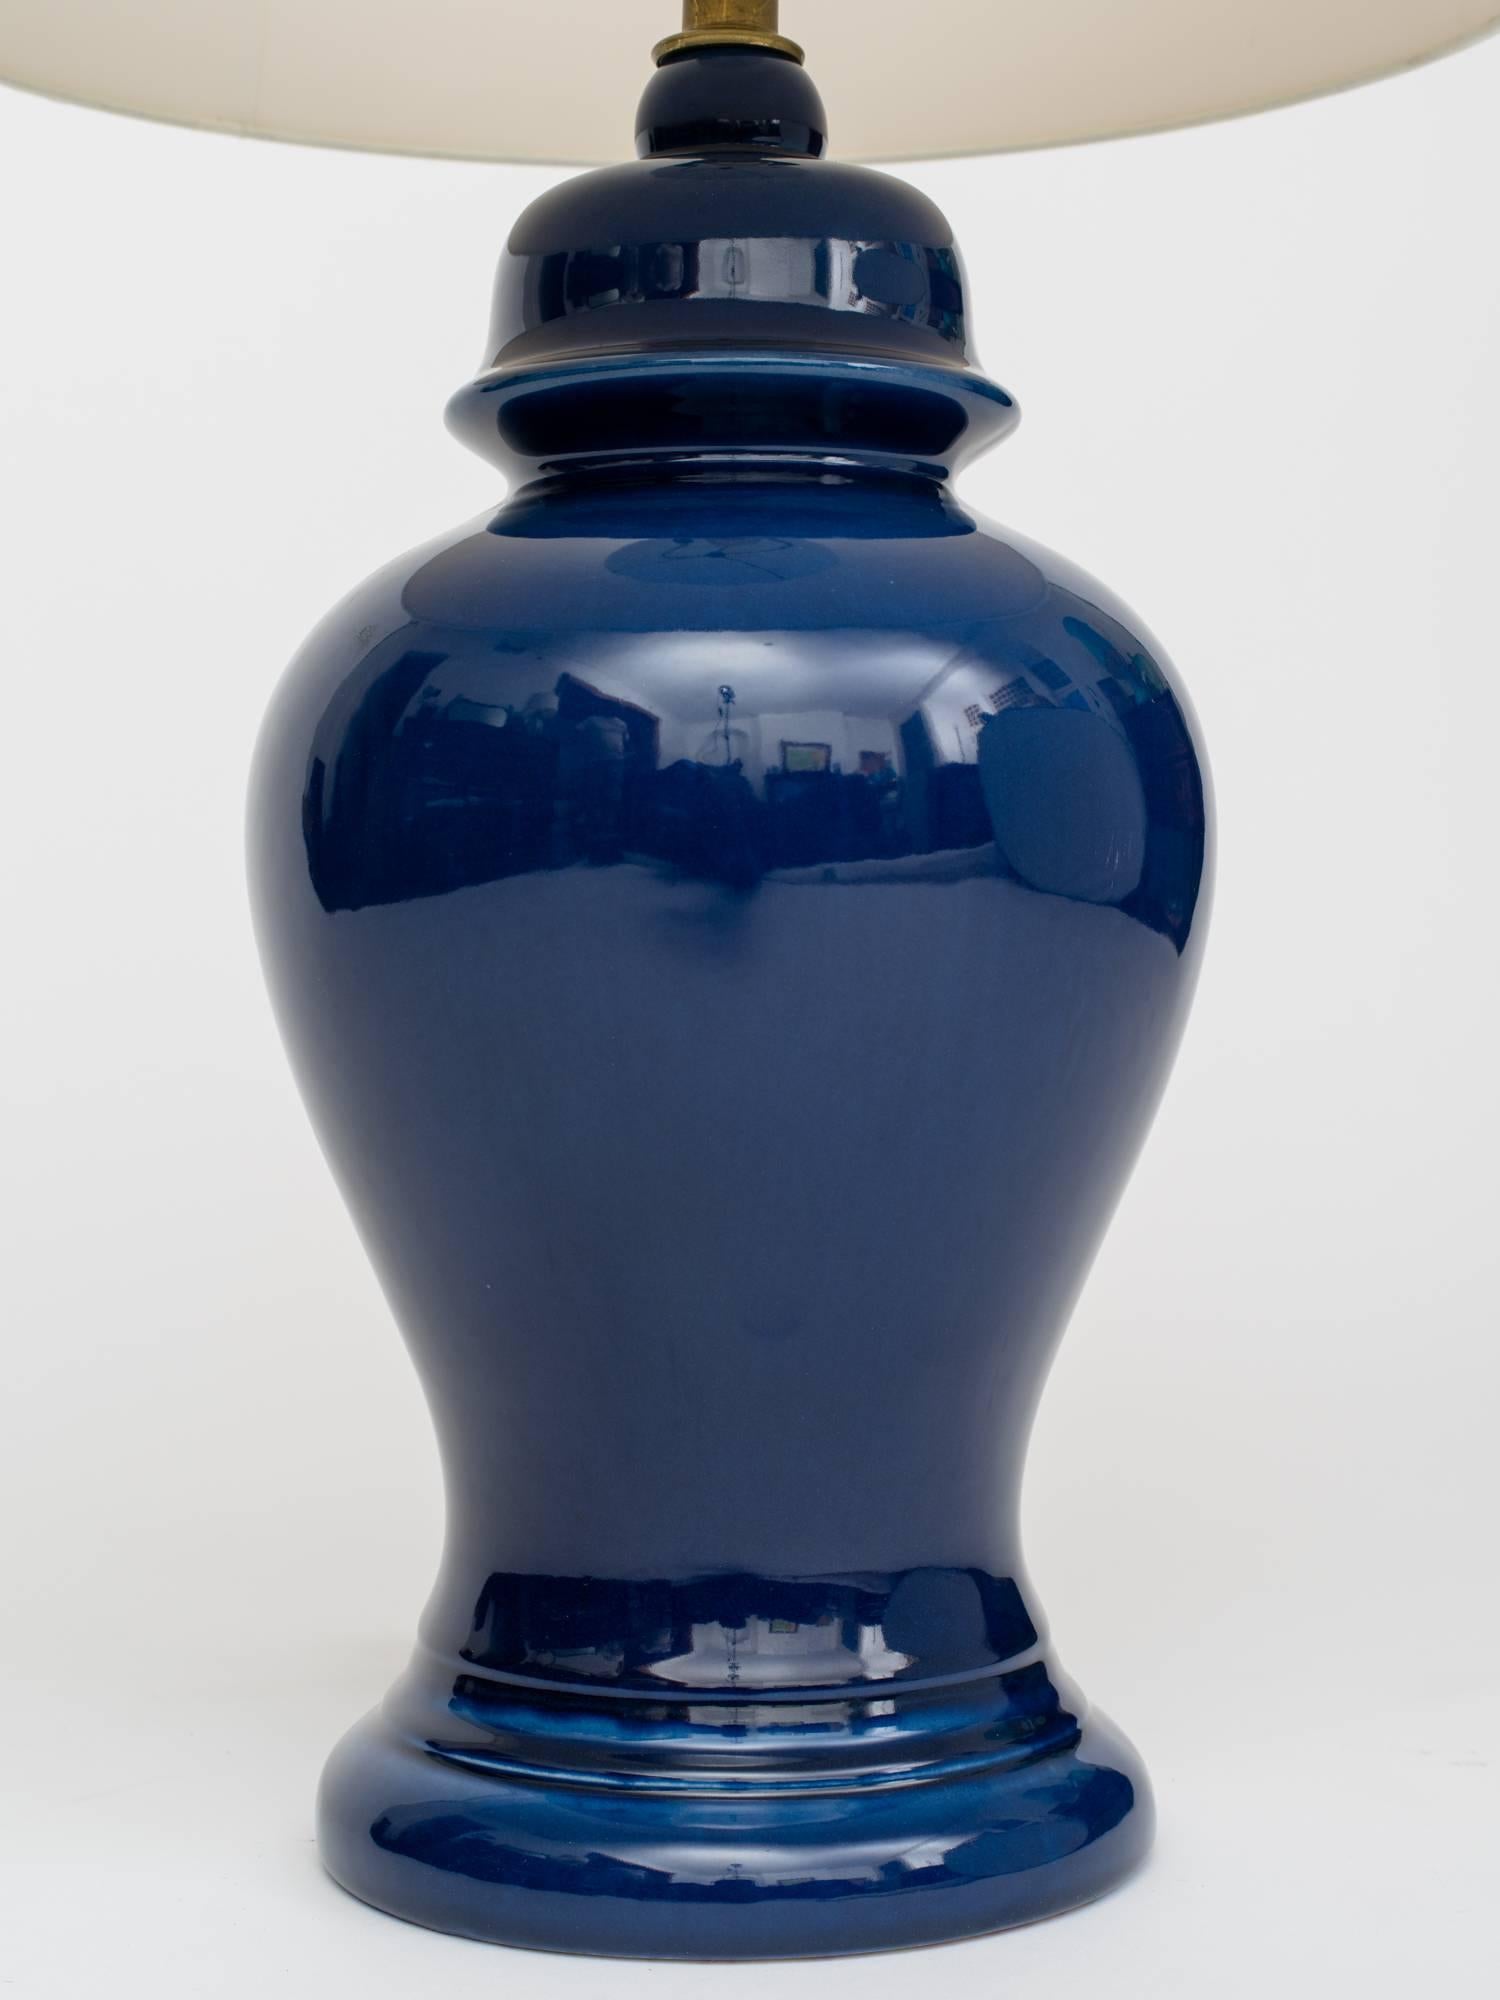 Wunderschönes Paar 1960er Jahre Indigo Keramik Ingwer Glas Form Lampen. 
Lampengehäuse misst 20